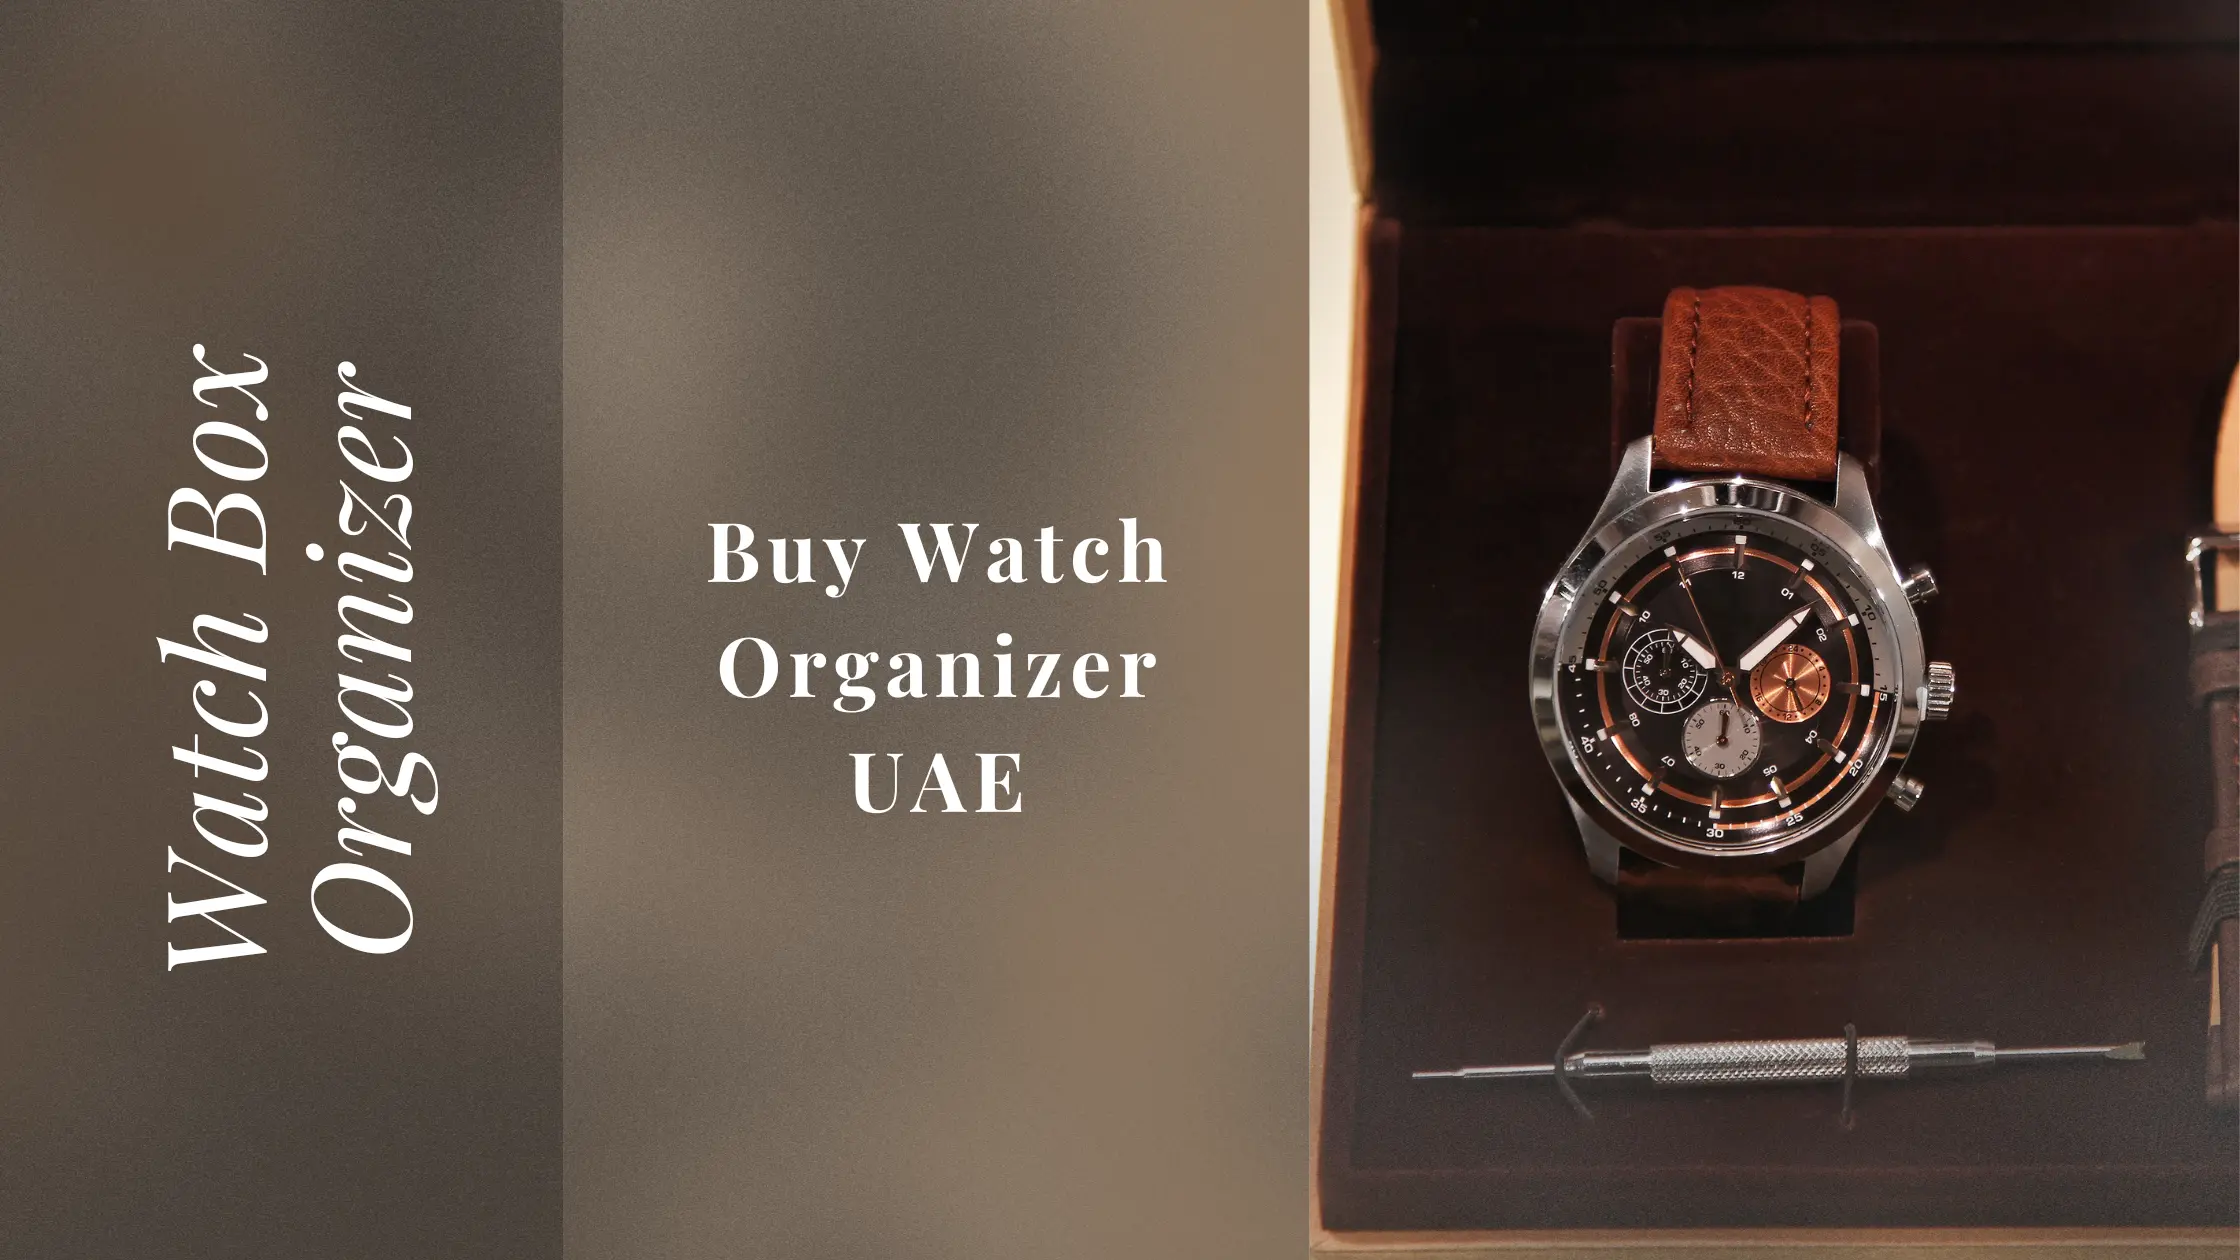 Watch Box Organizer: Buy Watch Organizer UAE